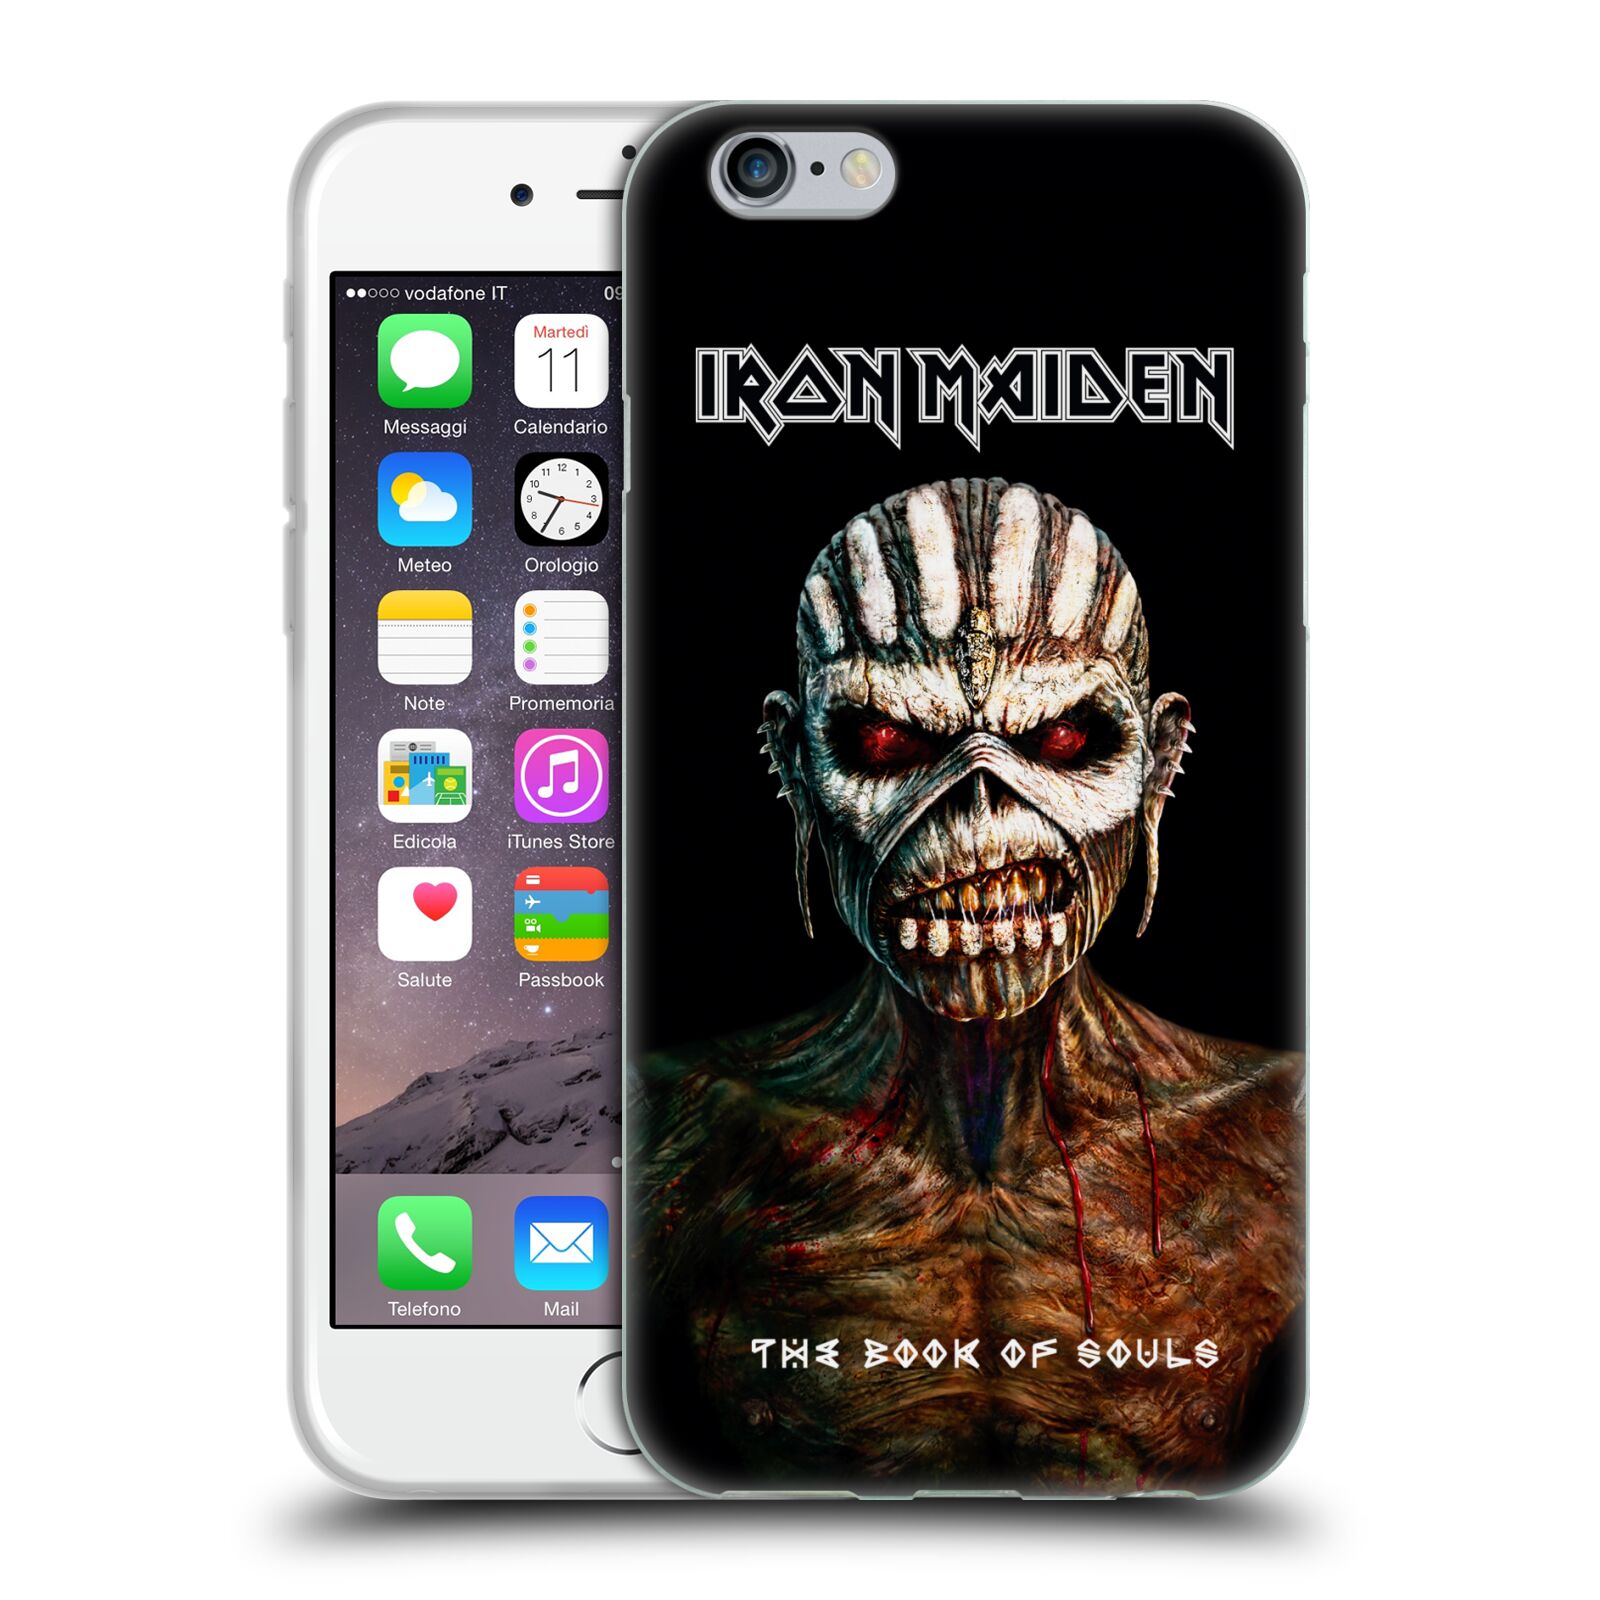 Silikonové pouzdro na mobil Apple iPhone 6 HEAD CASE - Iron Maiden - The Book Of Souls (Silikonový kryt či obal na mobilní telefon s licencovaným motivem Iron Maiden Apple iPhone 6)